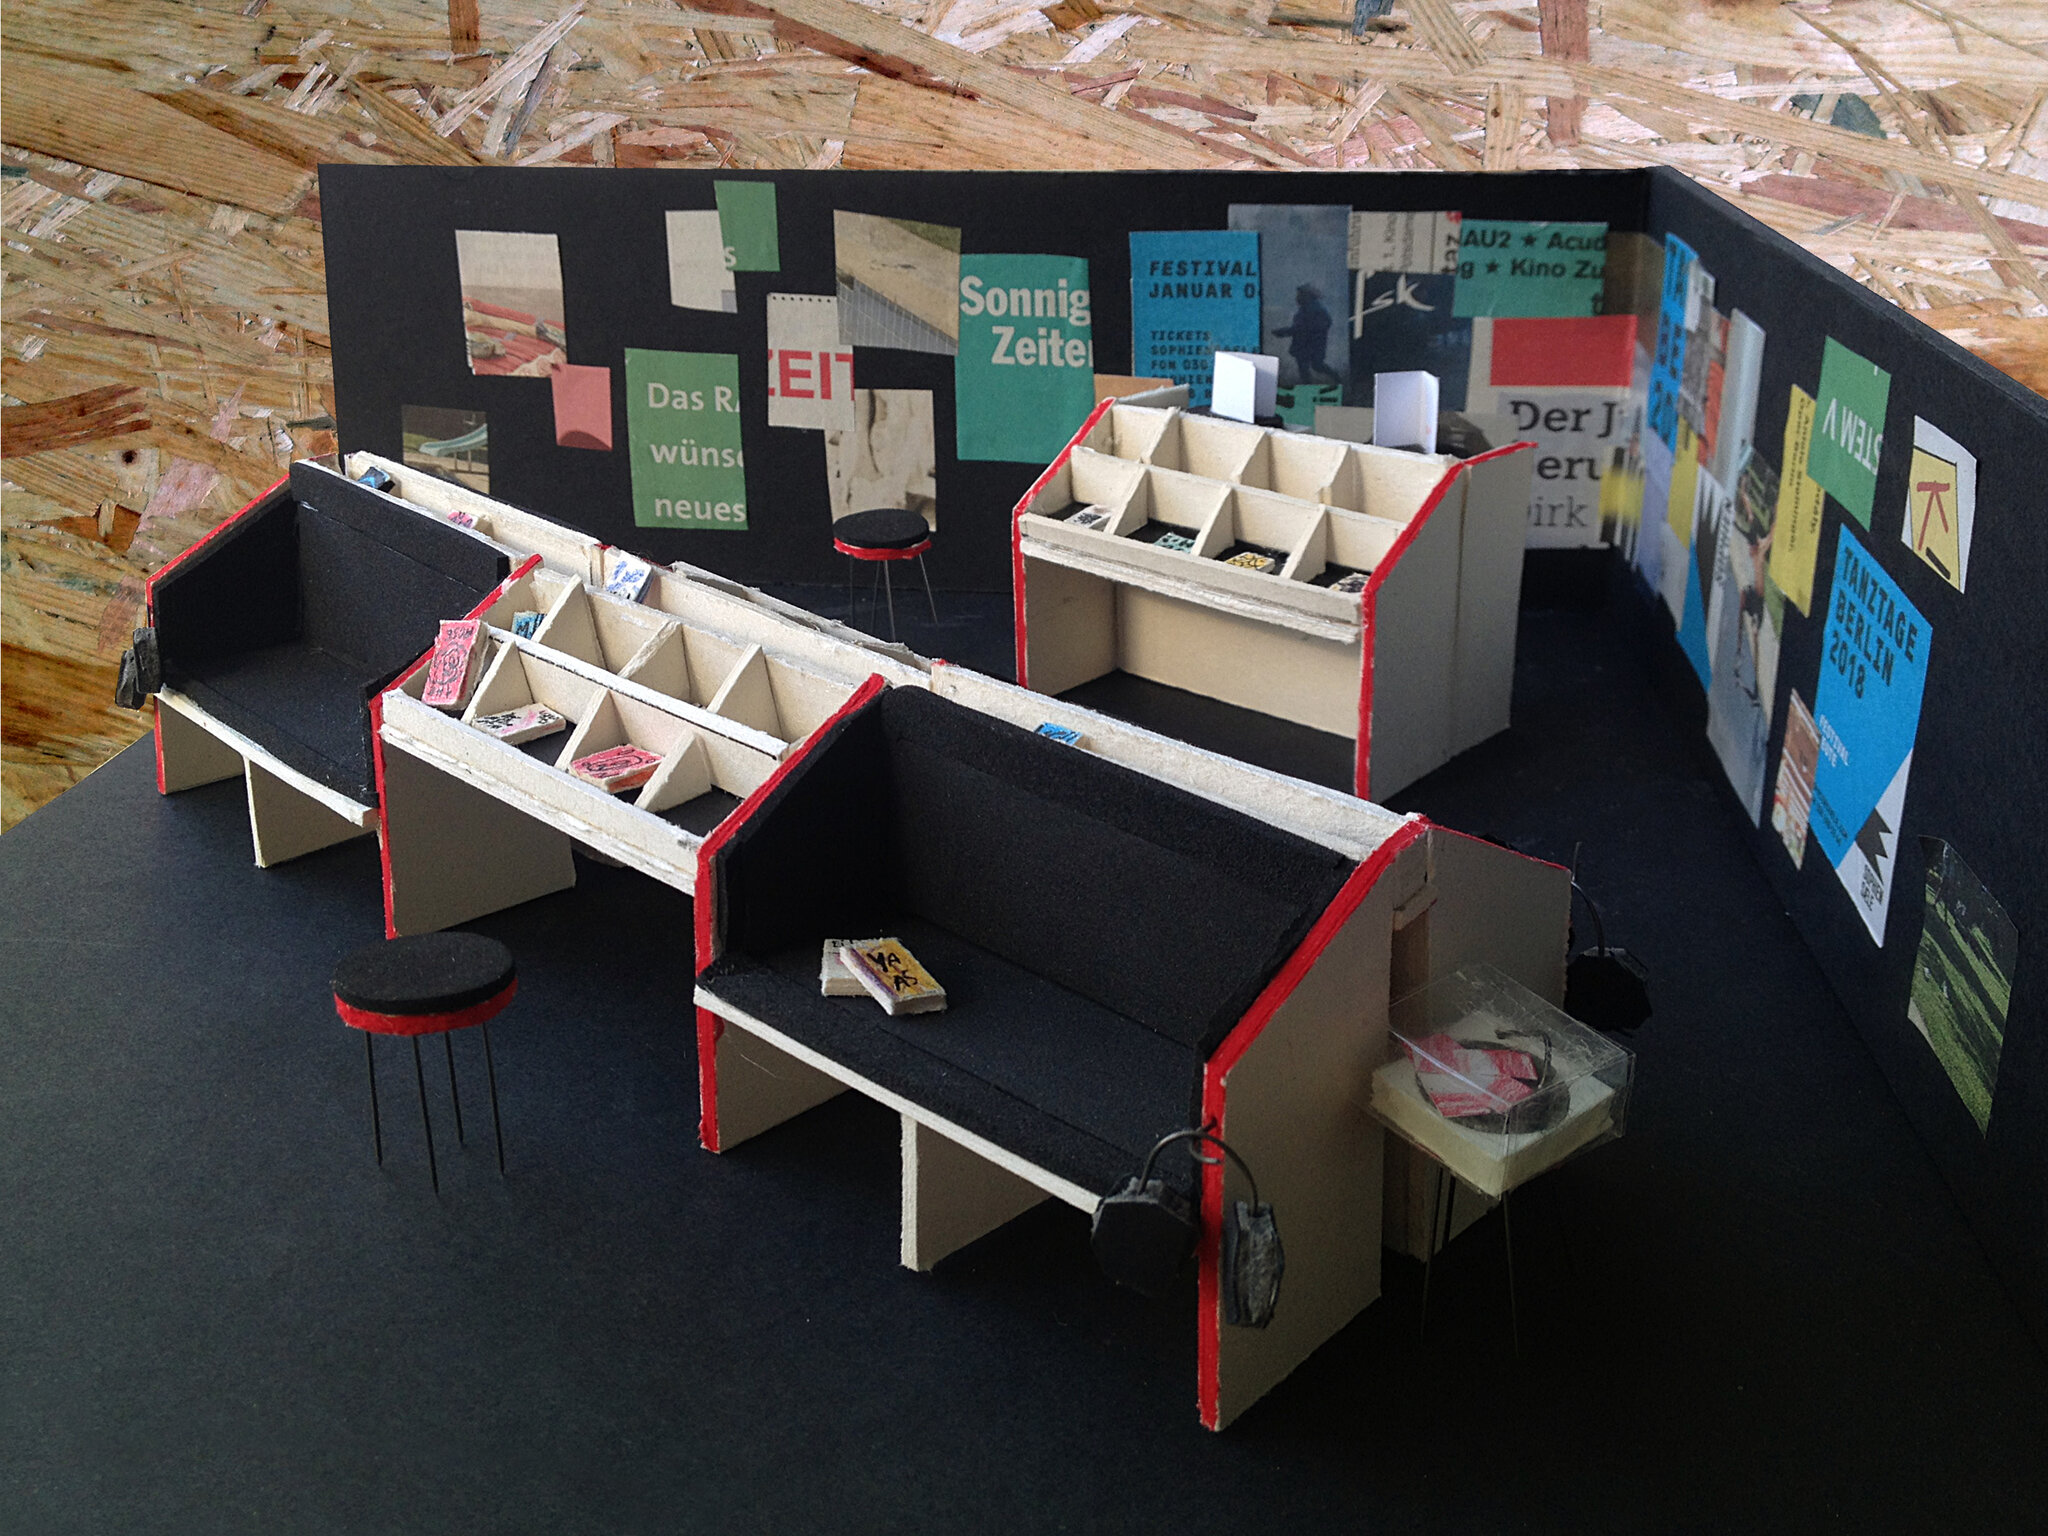 Bücher und Buchprojekte aus Weißensee auf der Leipziger Buchmesse